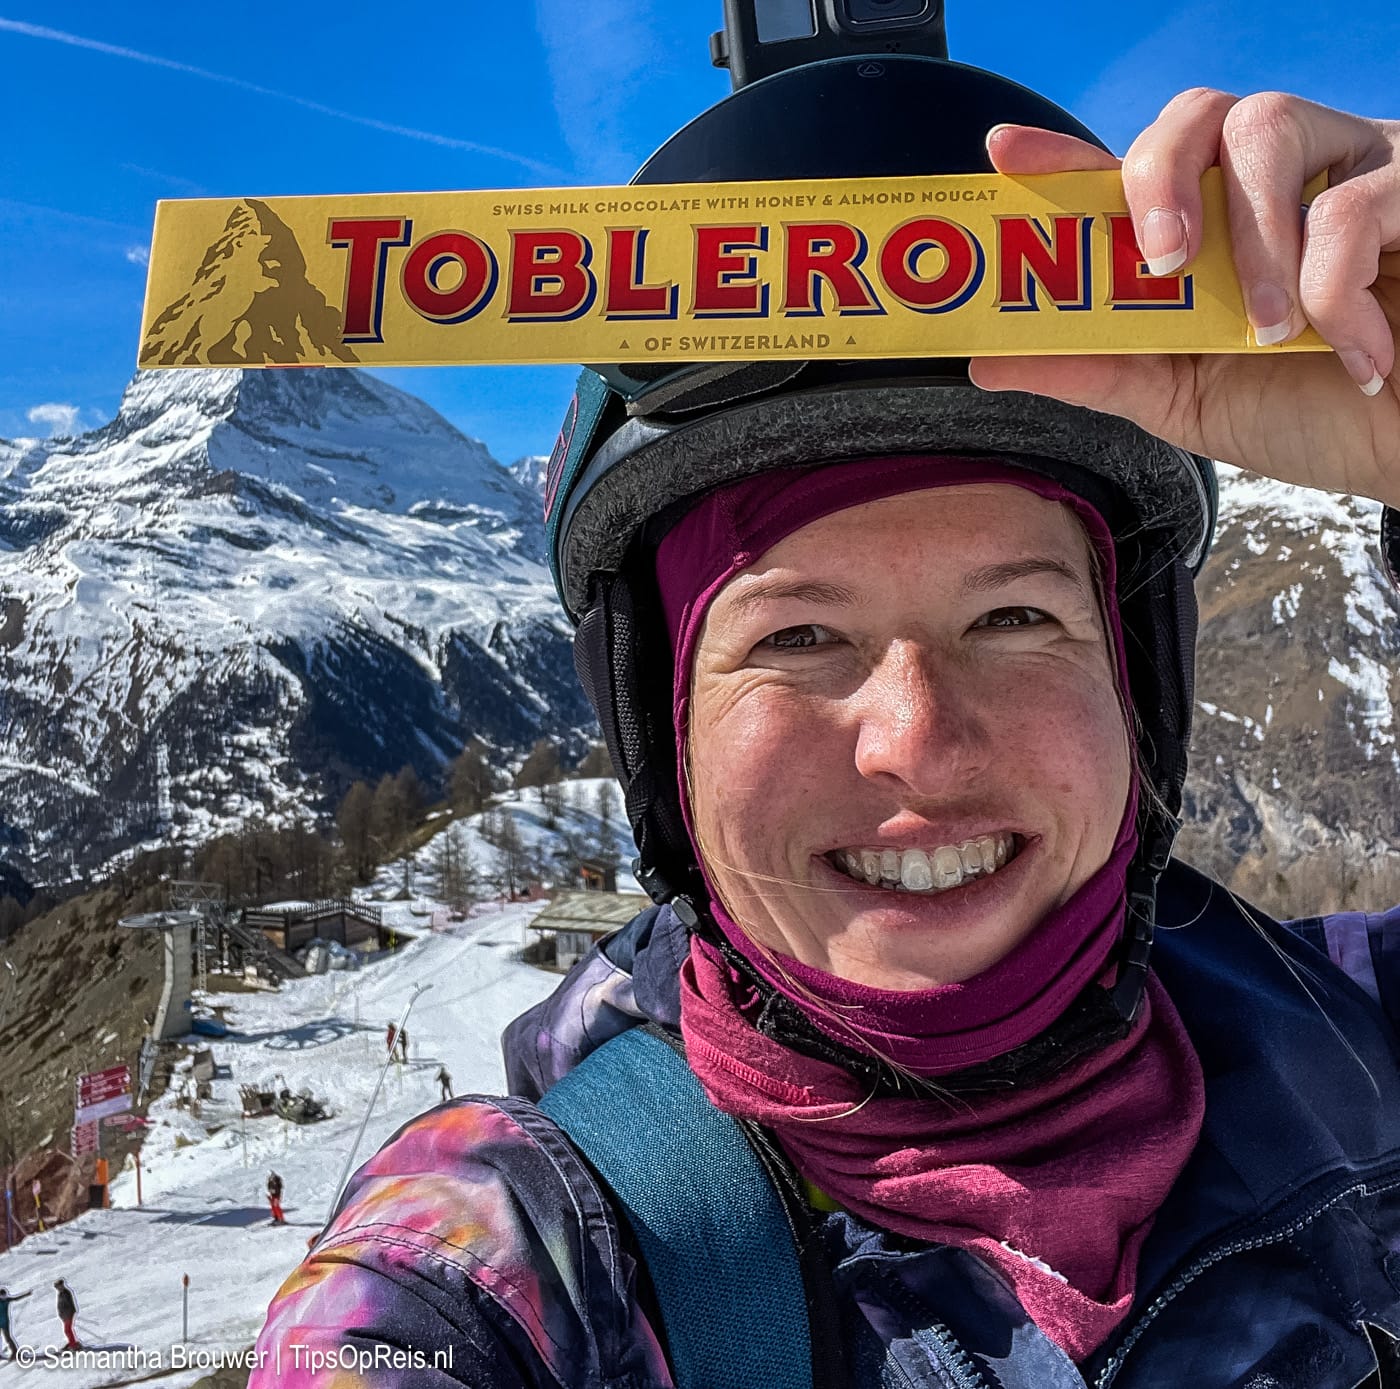 Maak een iconische foto van de Matterhorn op de Toblerone